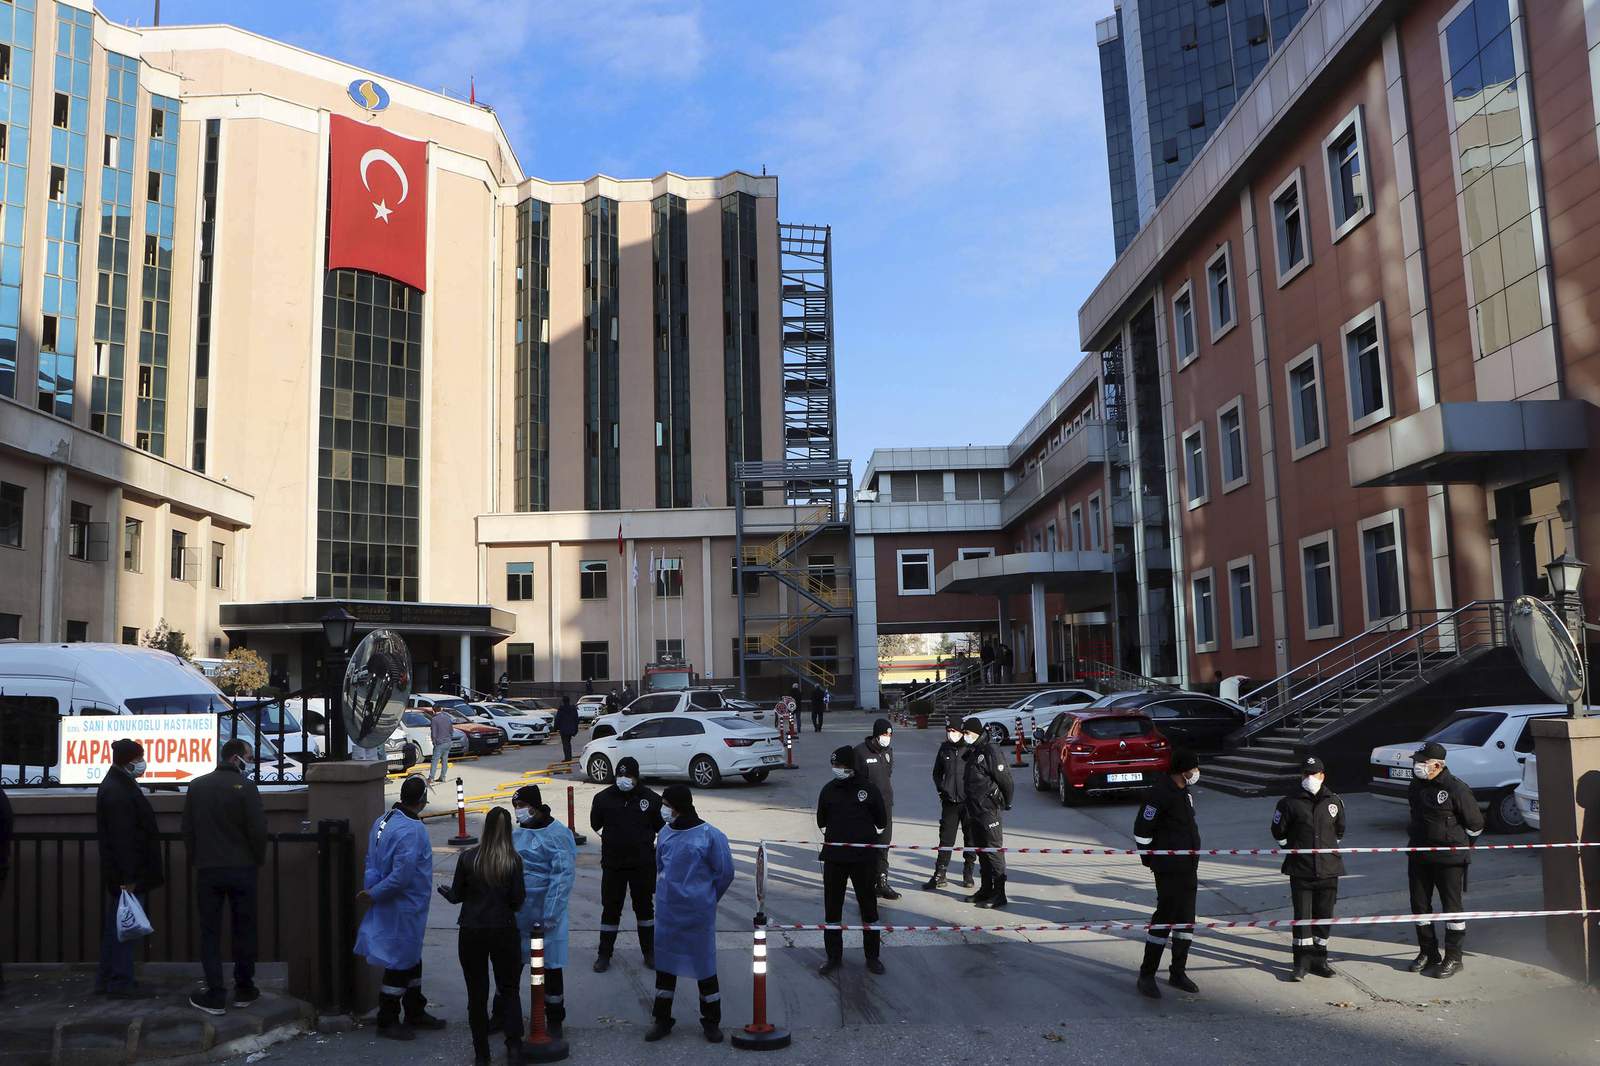 Hospital fire kills 9 COVID-19 patients at ICU in Turkey